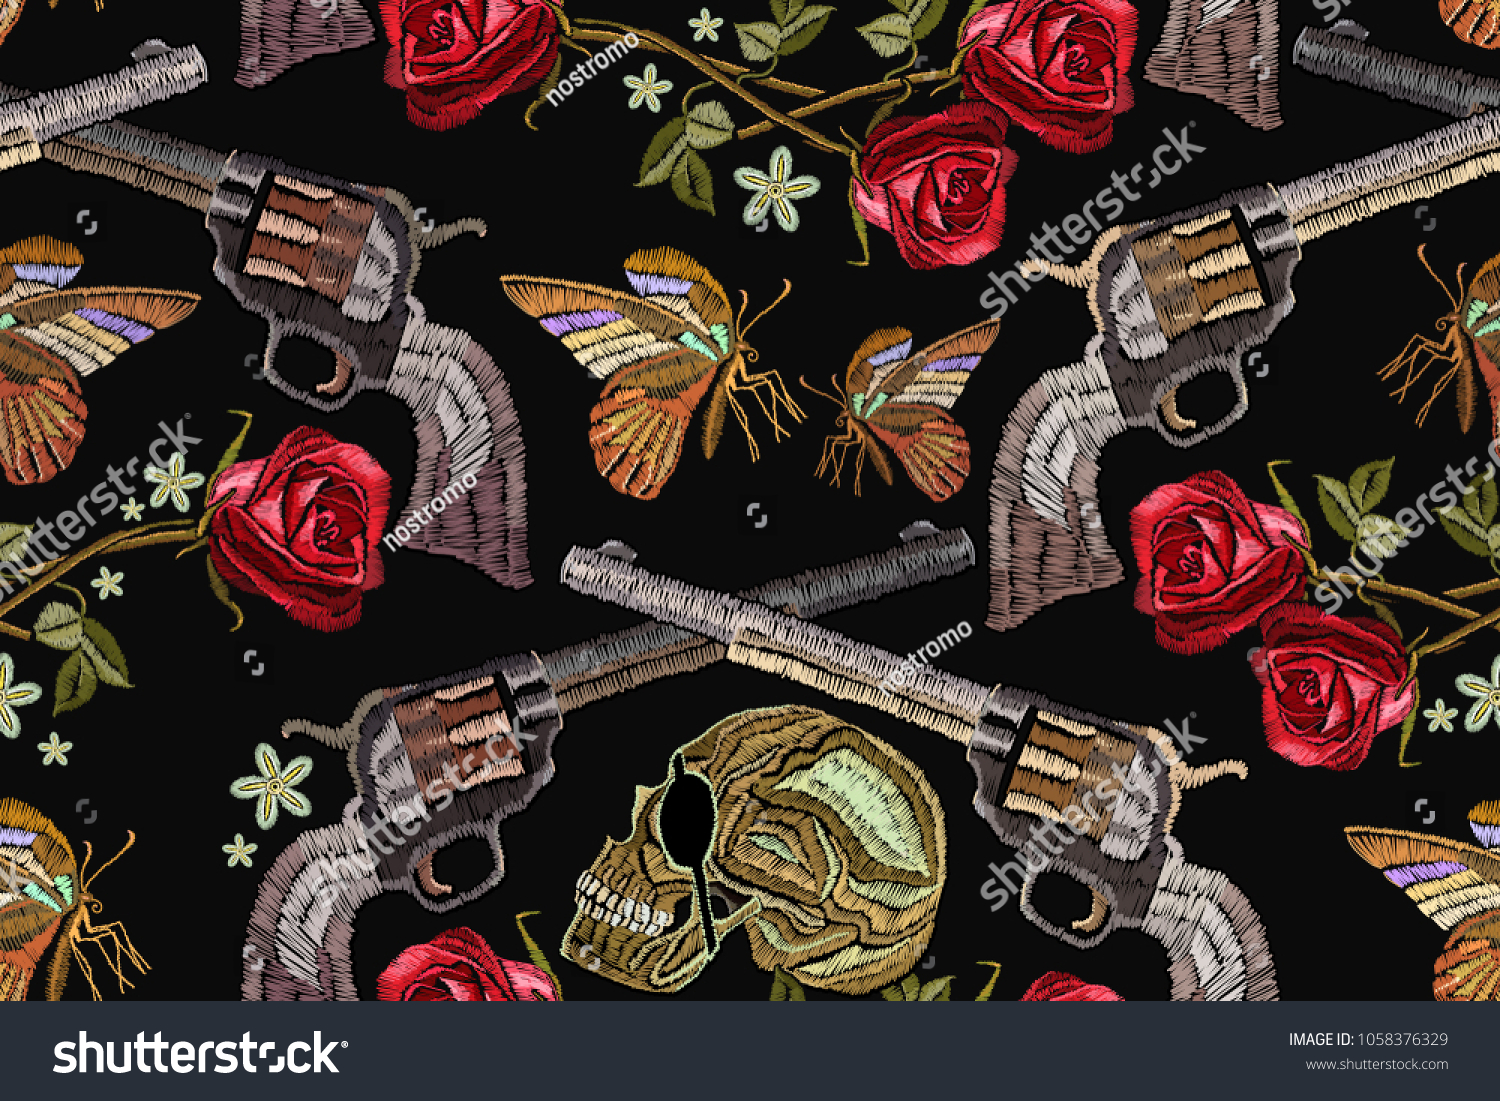 Пистолет и роза